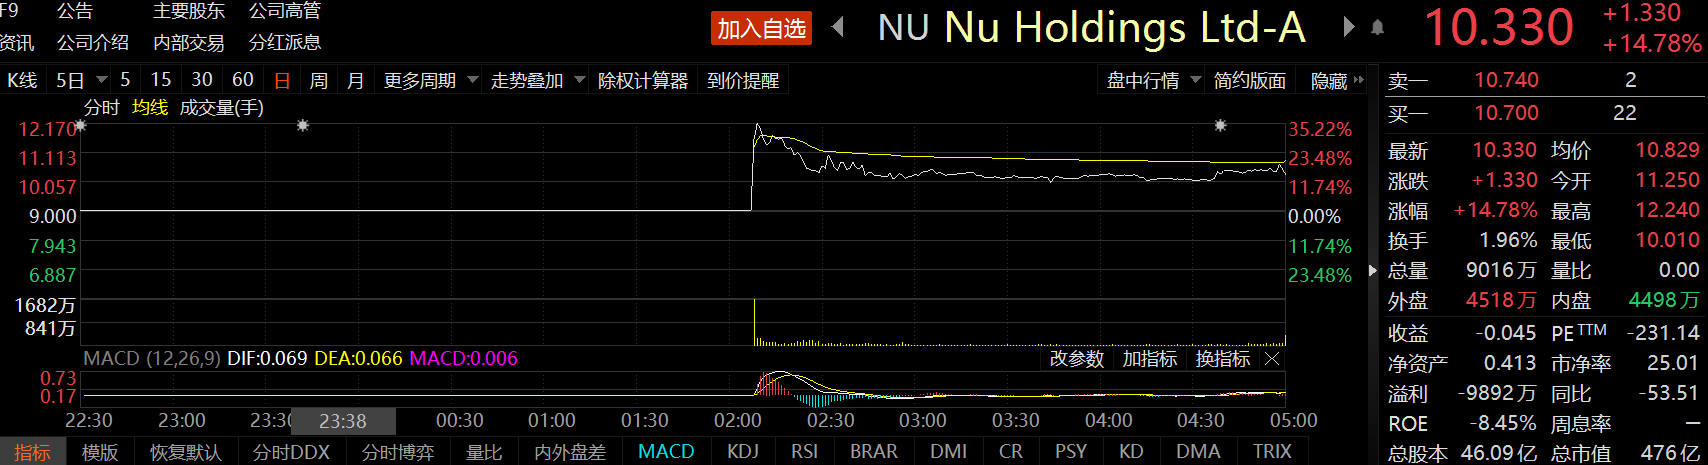 金融科技独角兽Nu Holdings登陆纽交所 发行2.892亿股股票